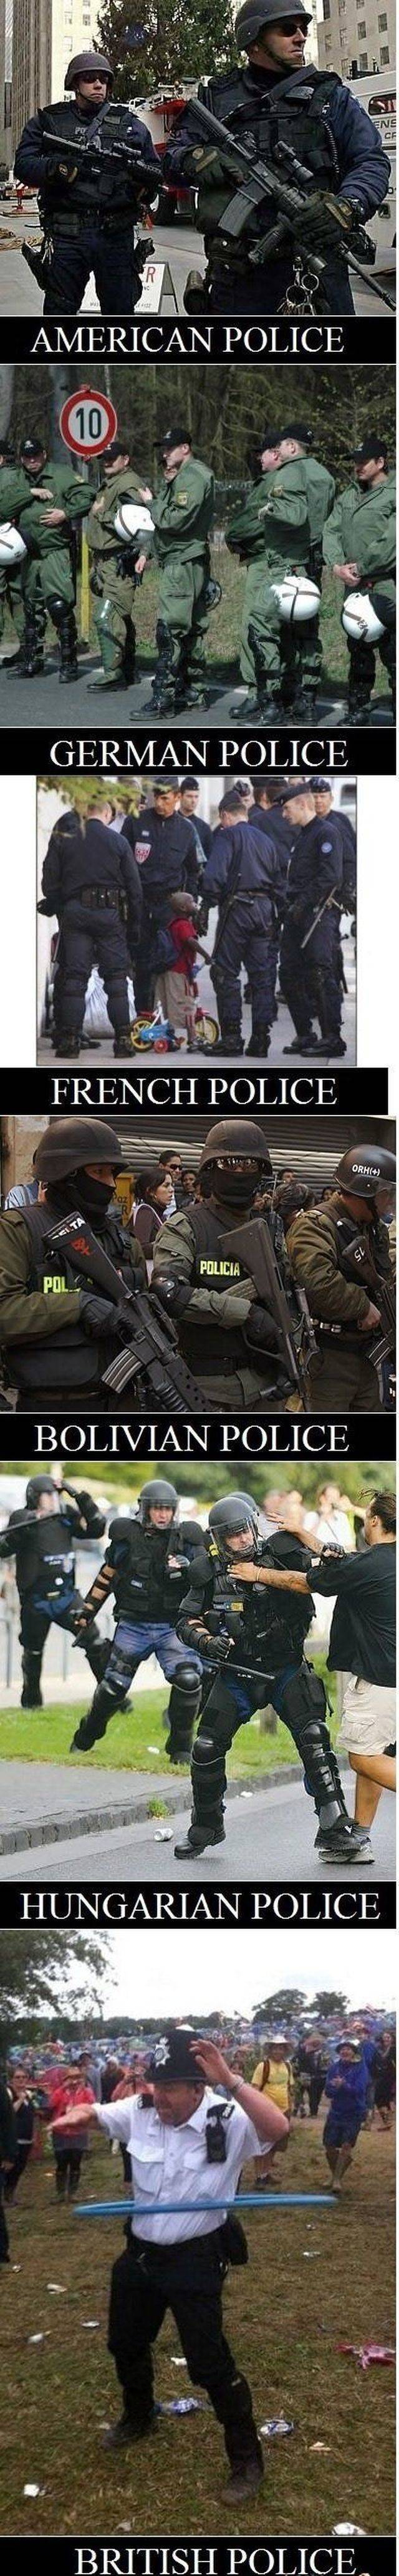 german police vs american police - Ala Olivia Powice Hungarian Police